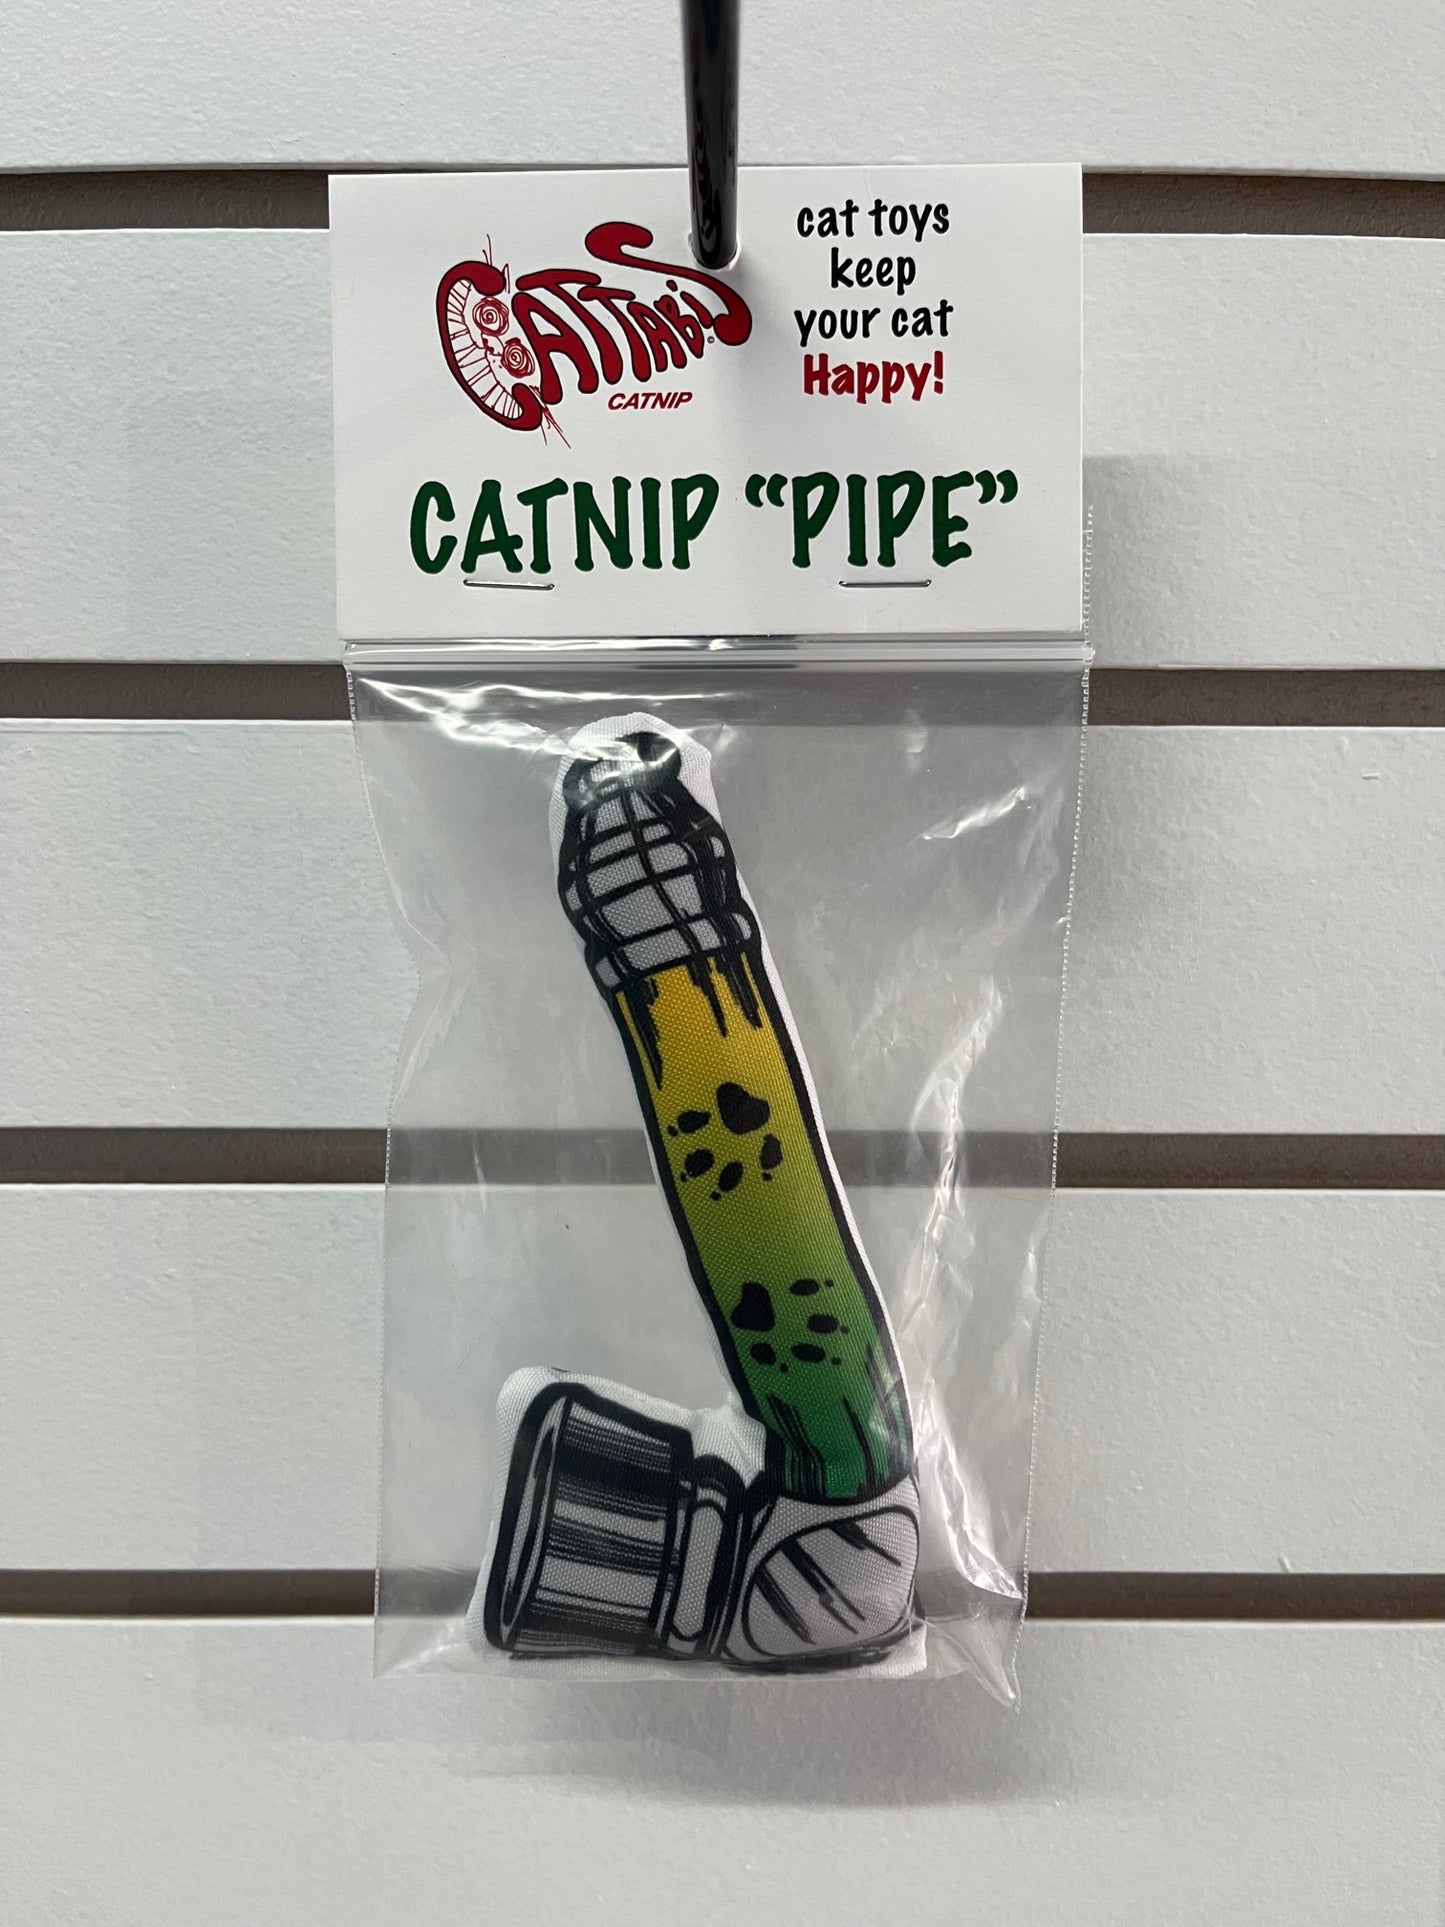 Catnip "Pipe"